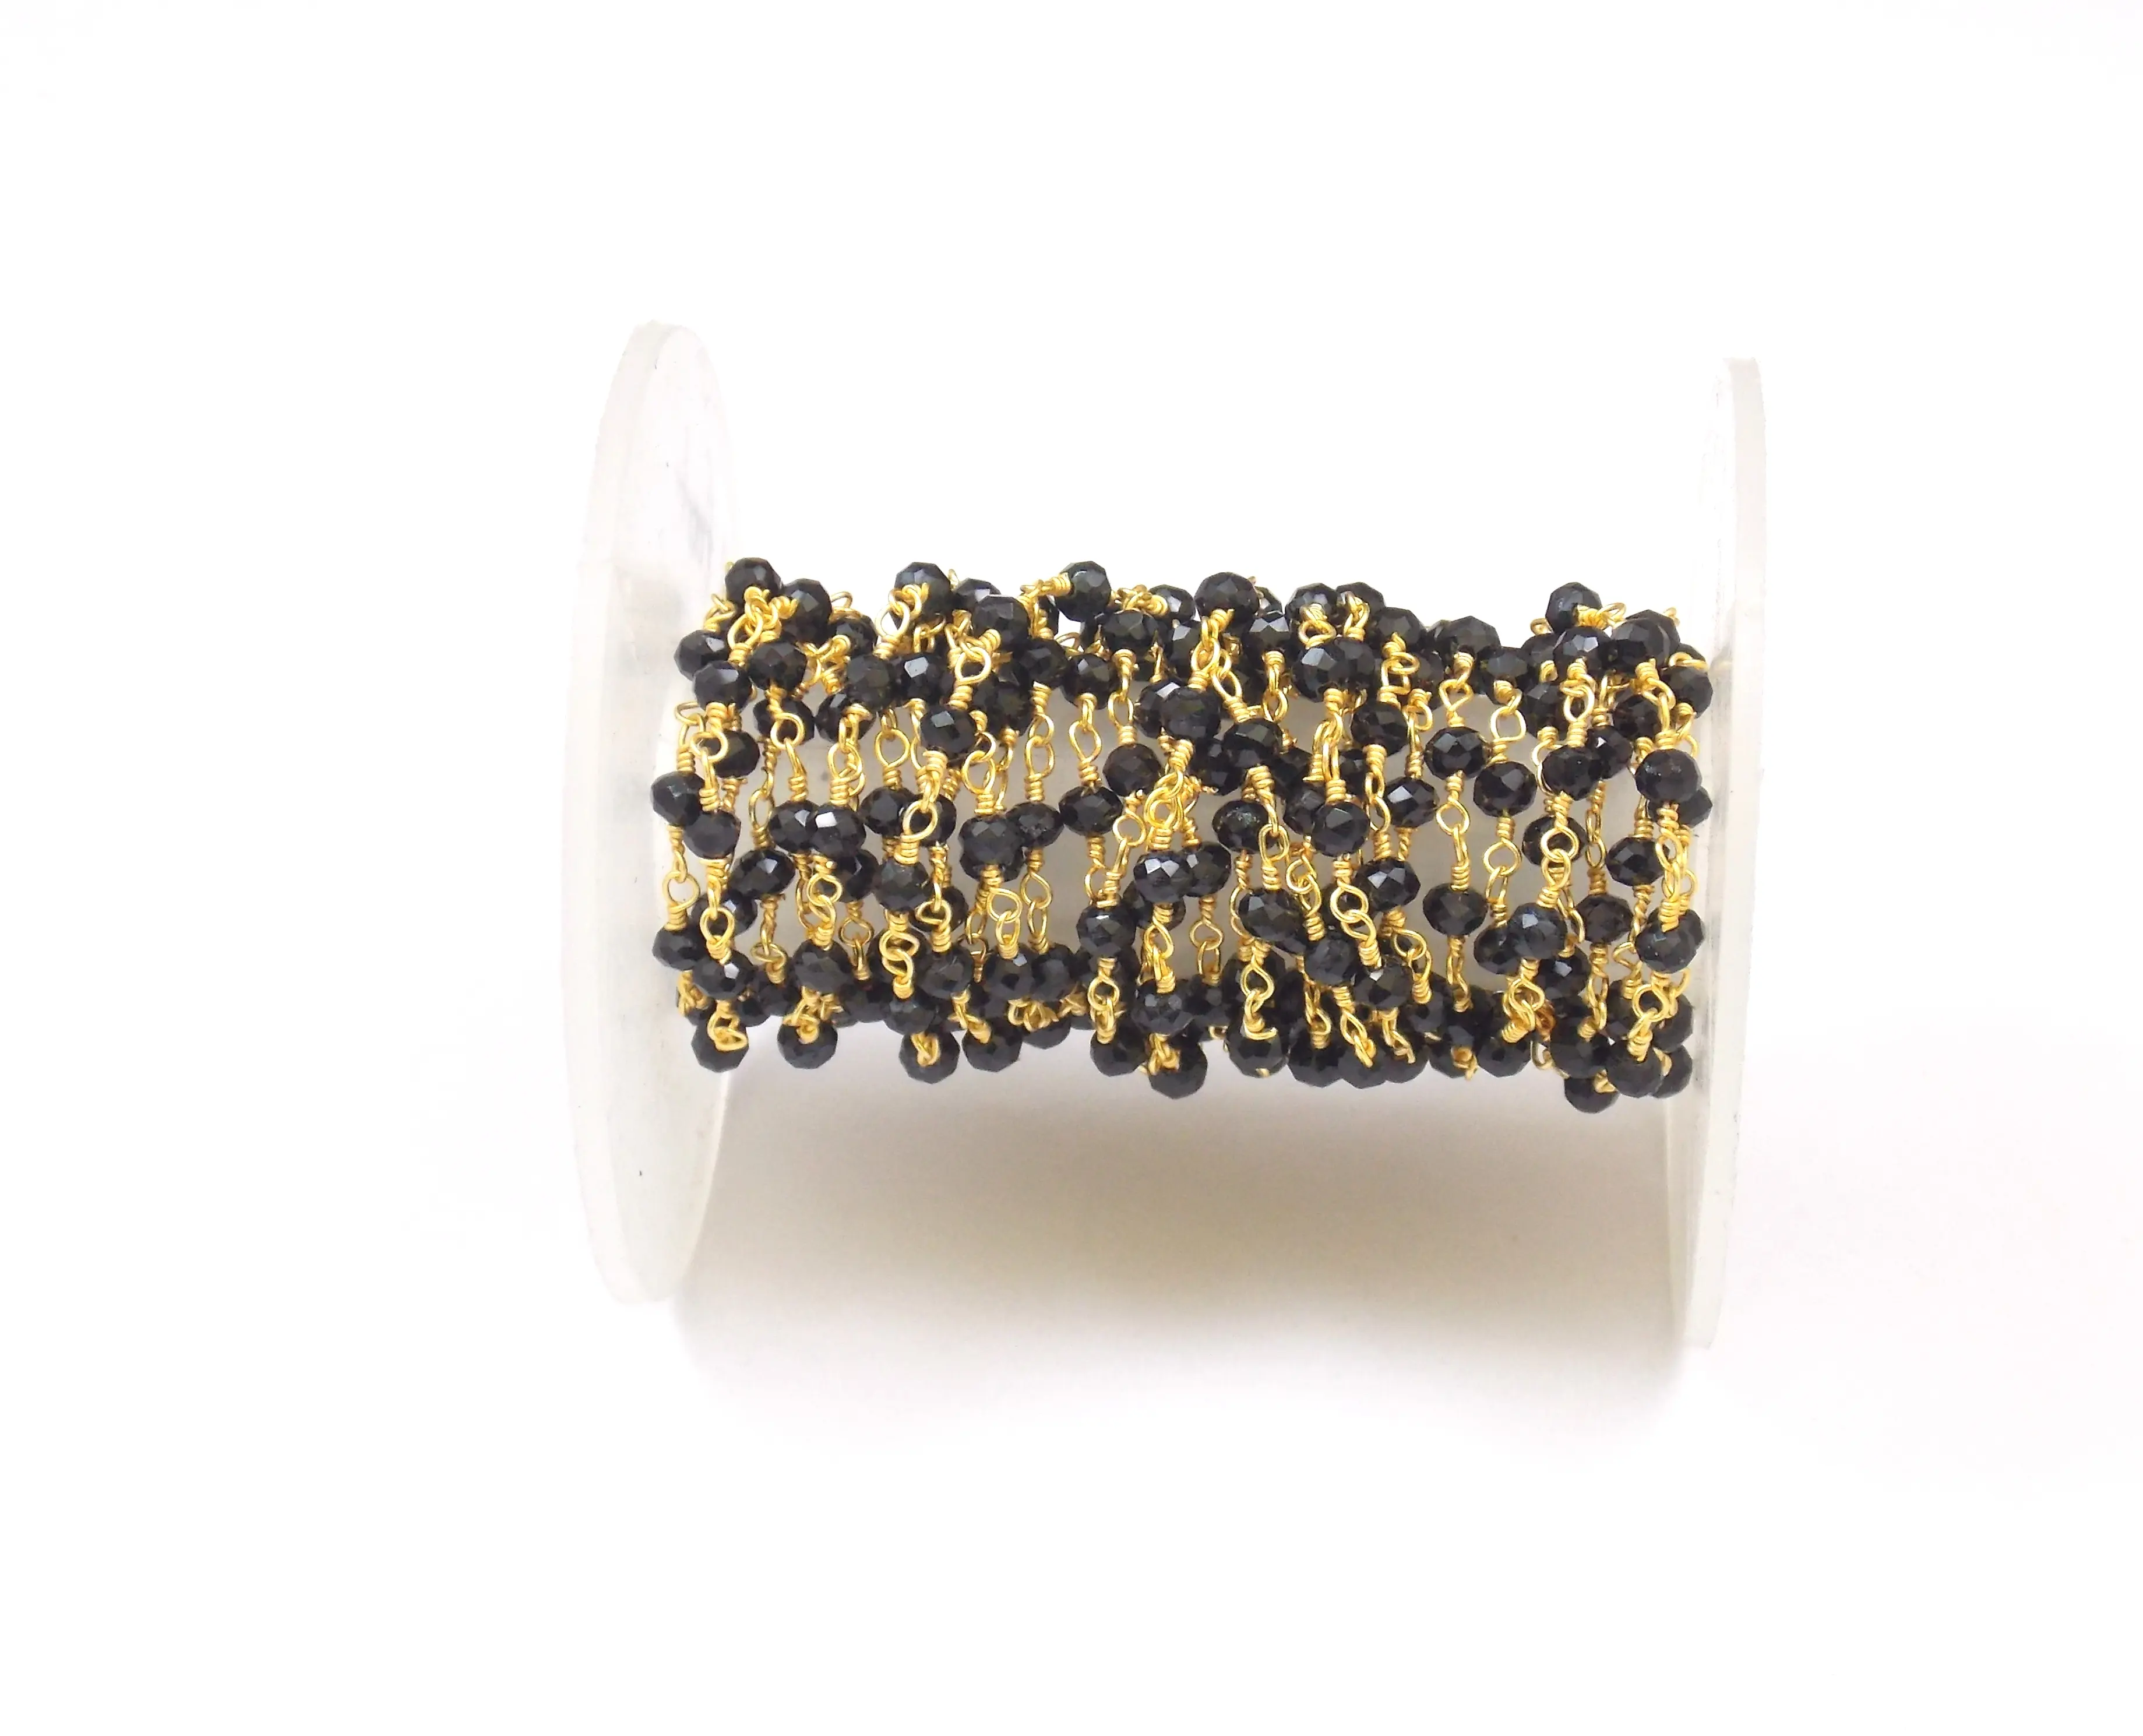 Schwarzer Onyx handgemachter Rosenkranz mit vergoldetem Halskette-Baugruppe für natürlichen Multi-Edelstein-Schmuck Münze-Charmankettchen